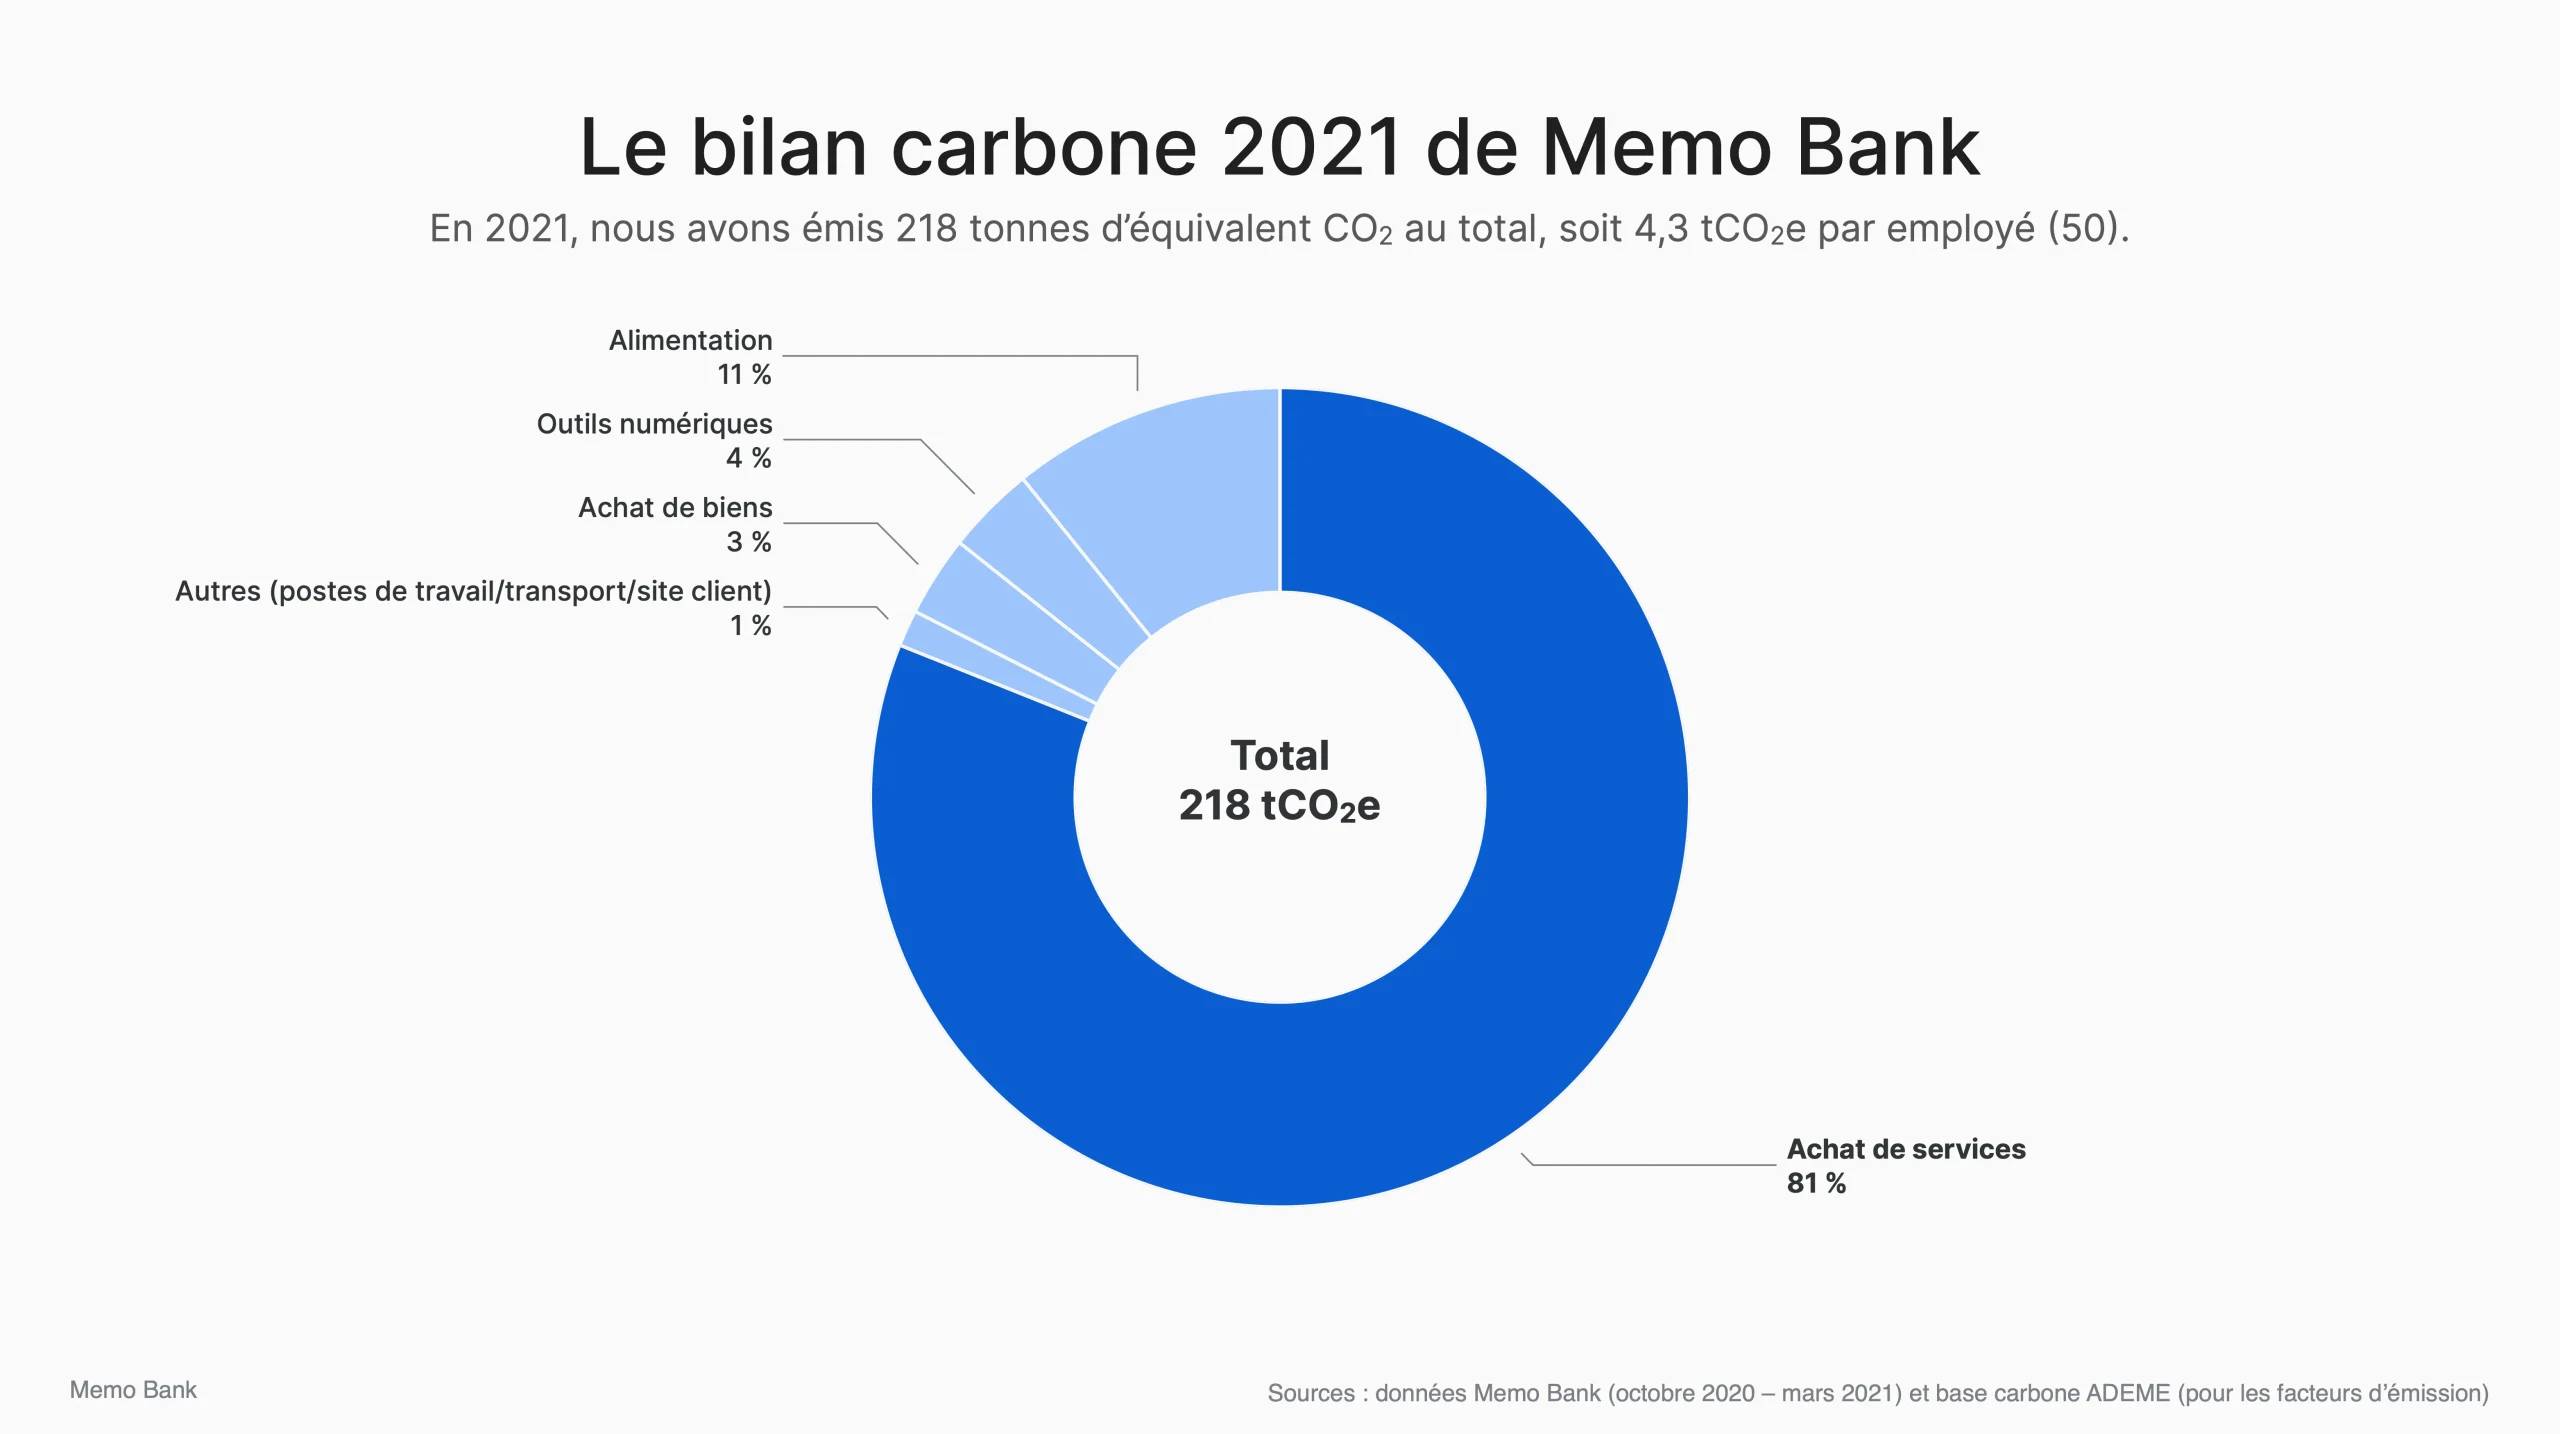 Le bilan carbone détaillé de Memo Bank en 2021